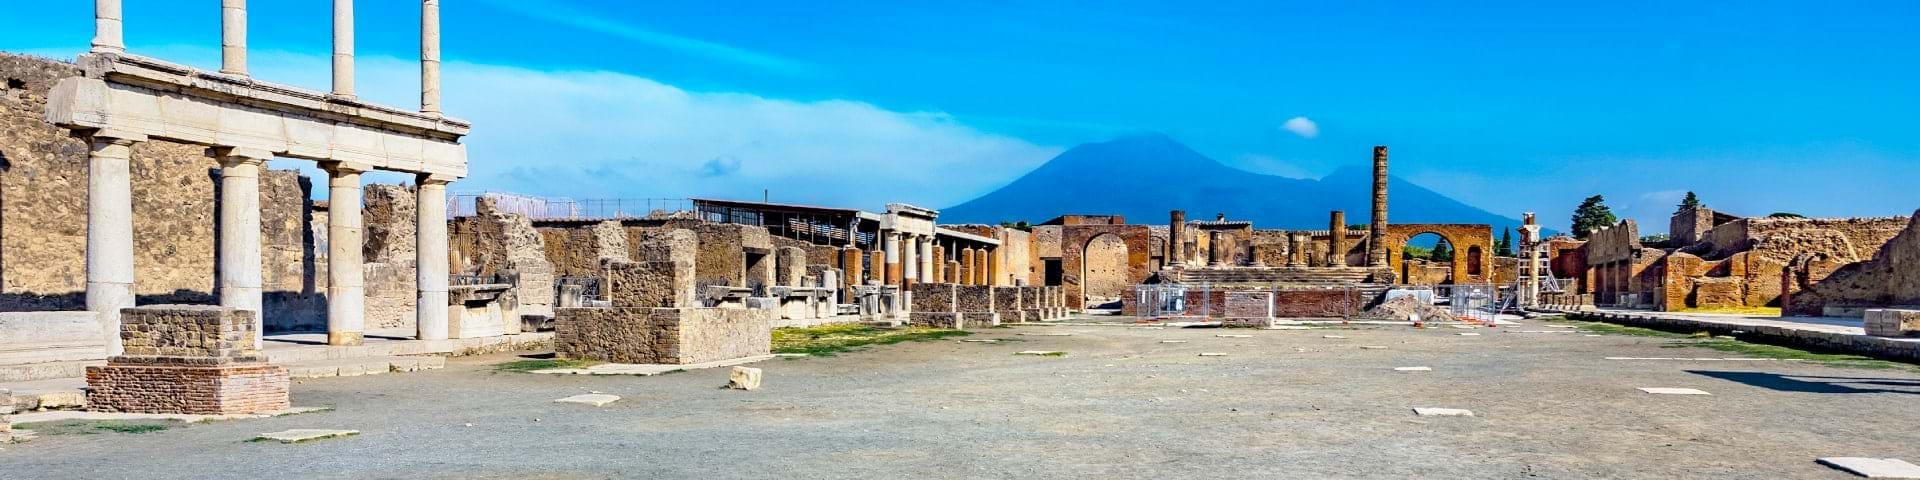 Pompeii & Amalfi Day Trips